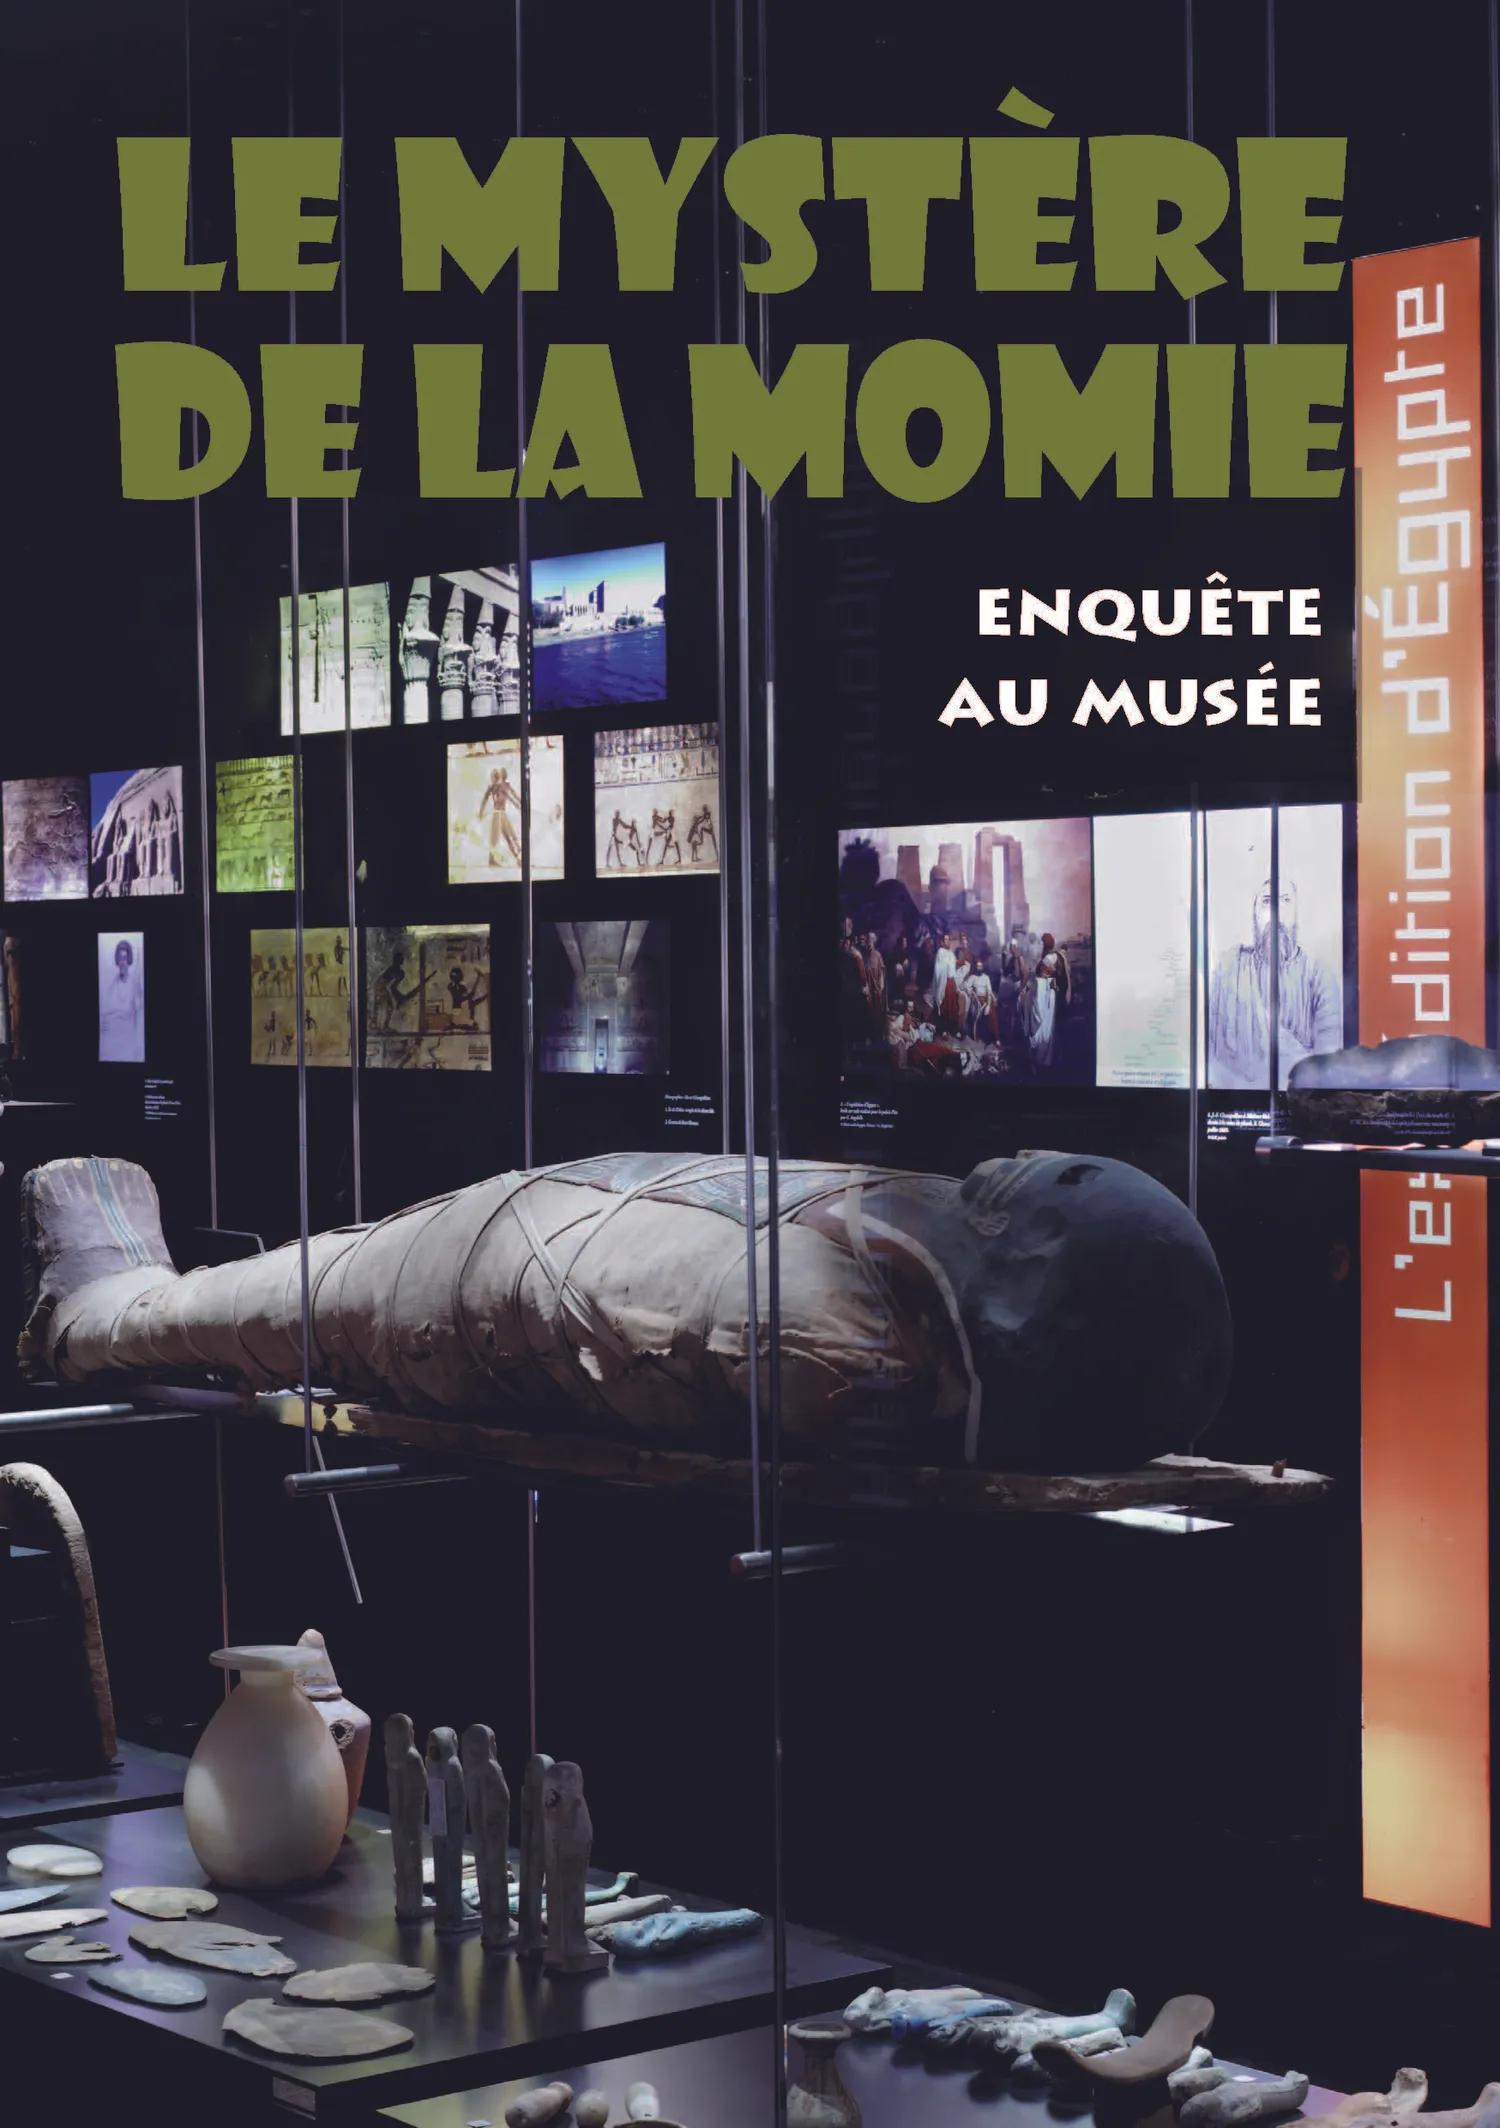 Image qui illustre: Visite-jeu "le Mystère De La Momie" à Figeac - 0